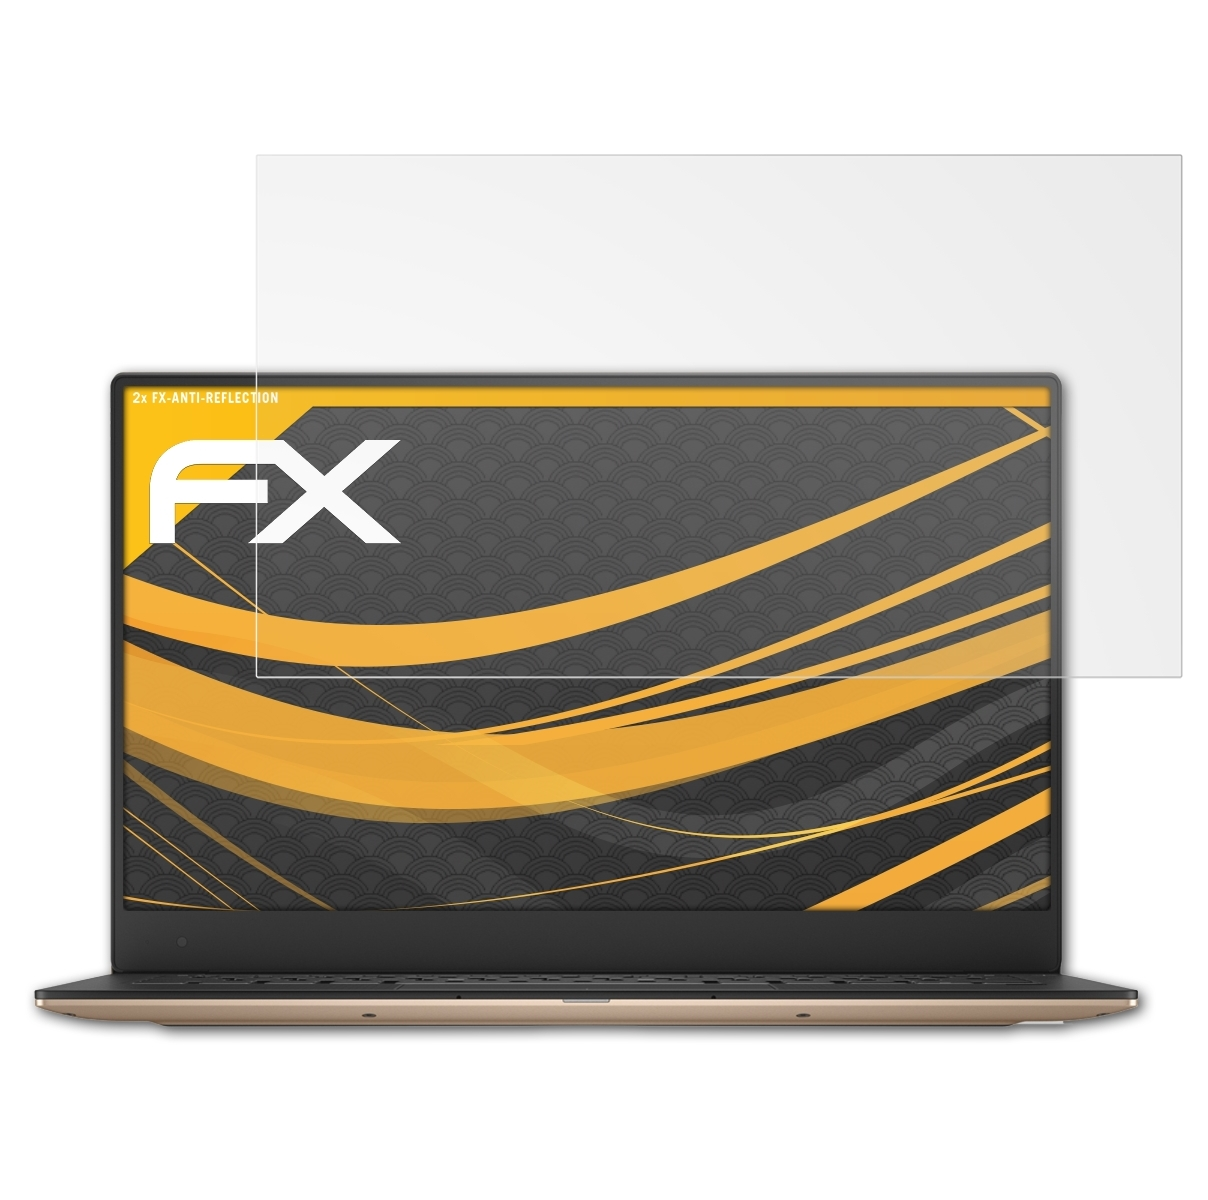 (9360)) ATFOLIX 13 XPS Displayschutz(für Dell FX-Antireflex 2x